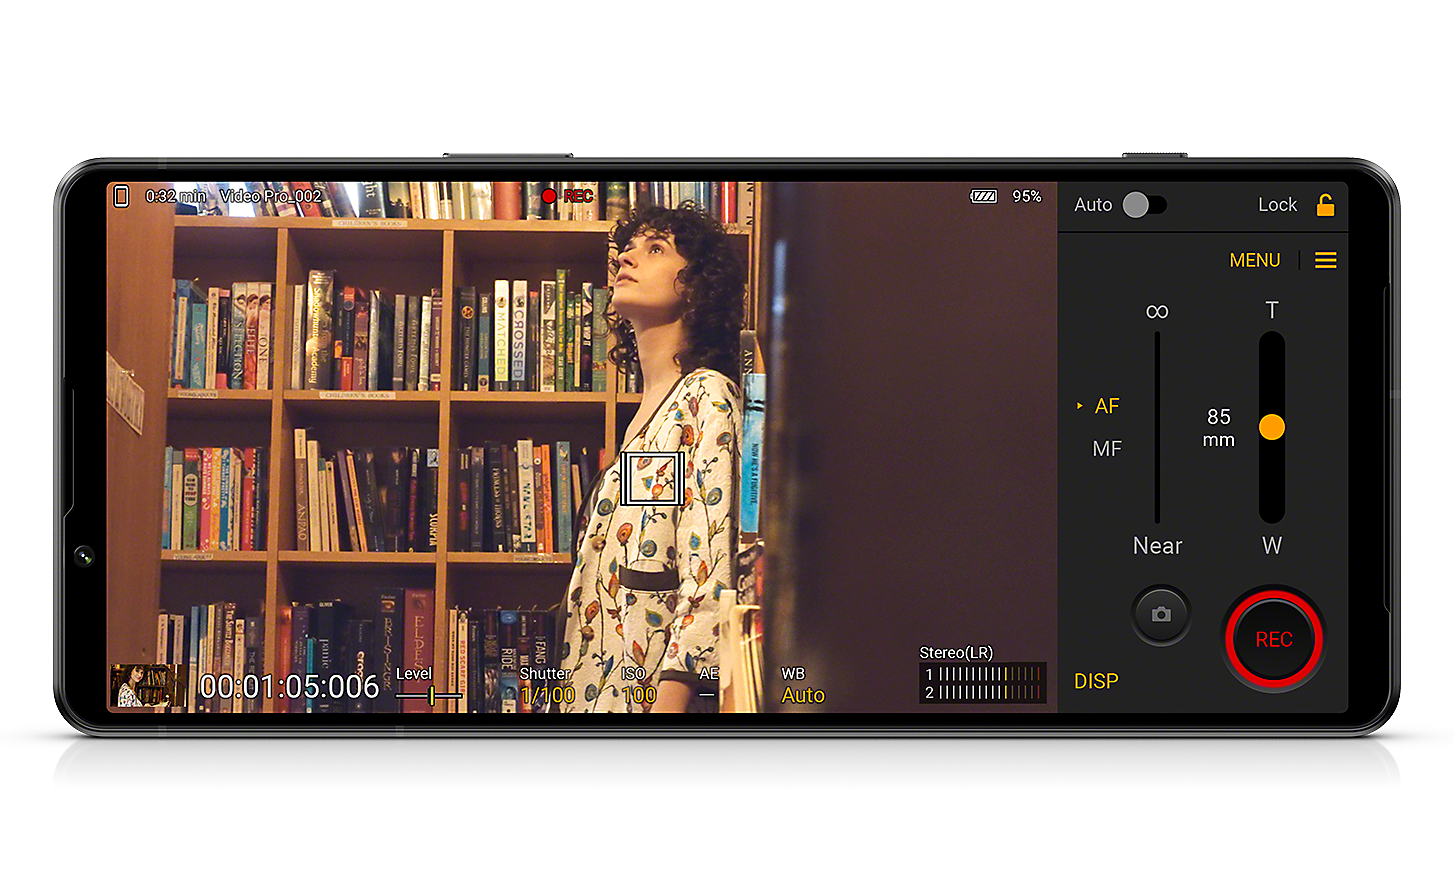 Xperia 1 IV:ssä näkyy Videography Pro -käyttöliittymä ja kuva naisesta kirjastossa